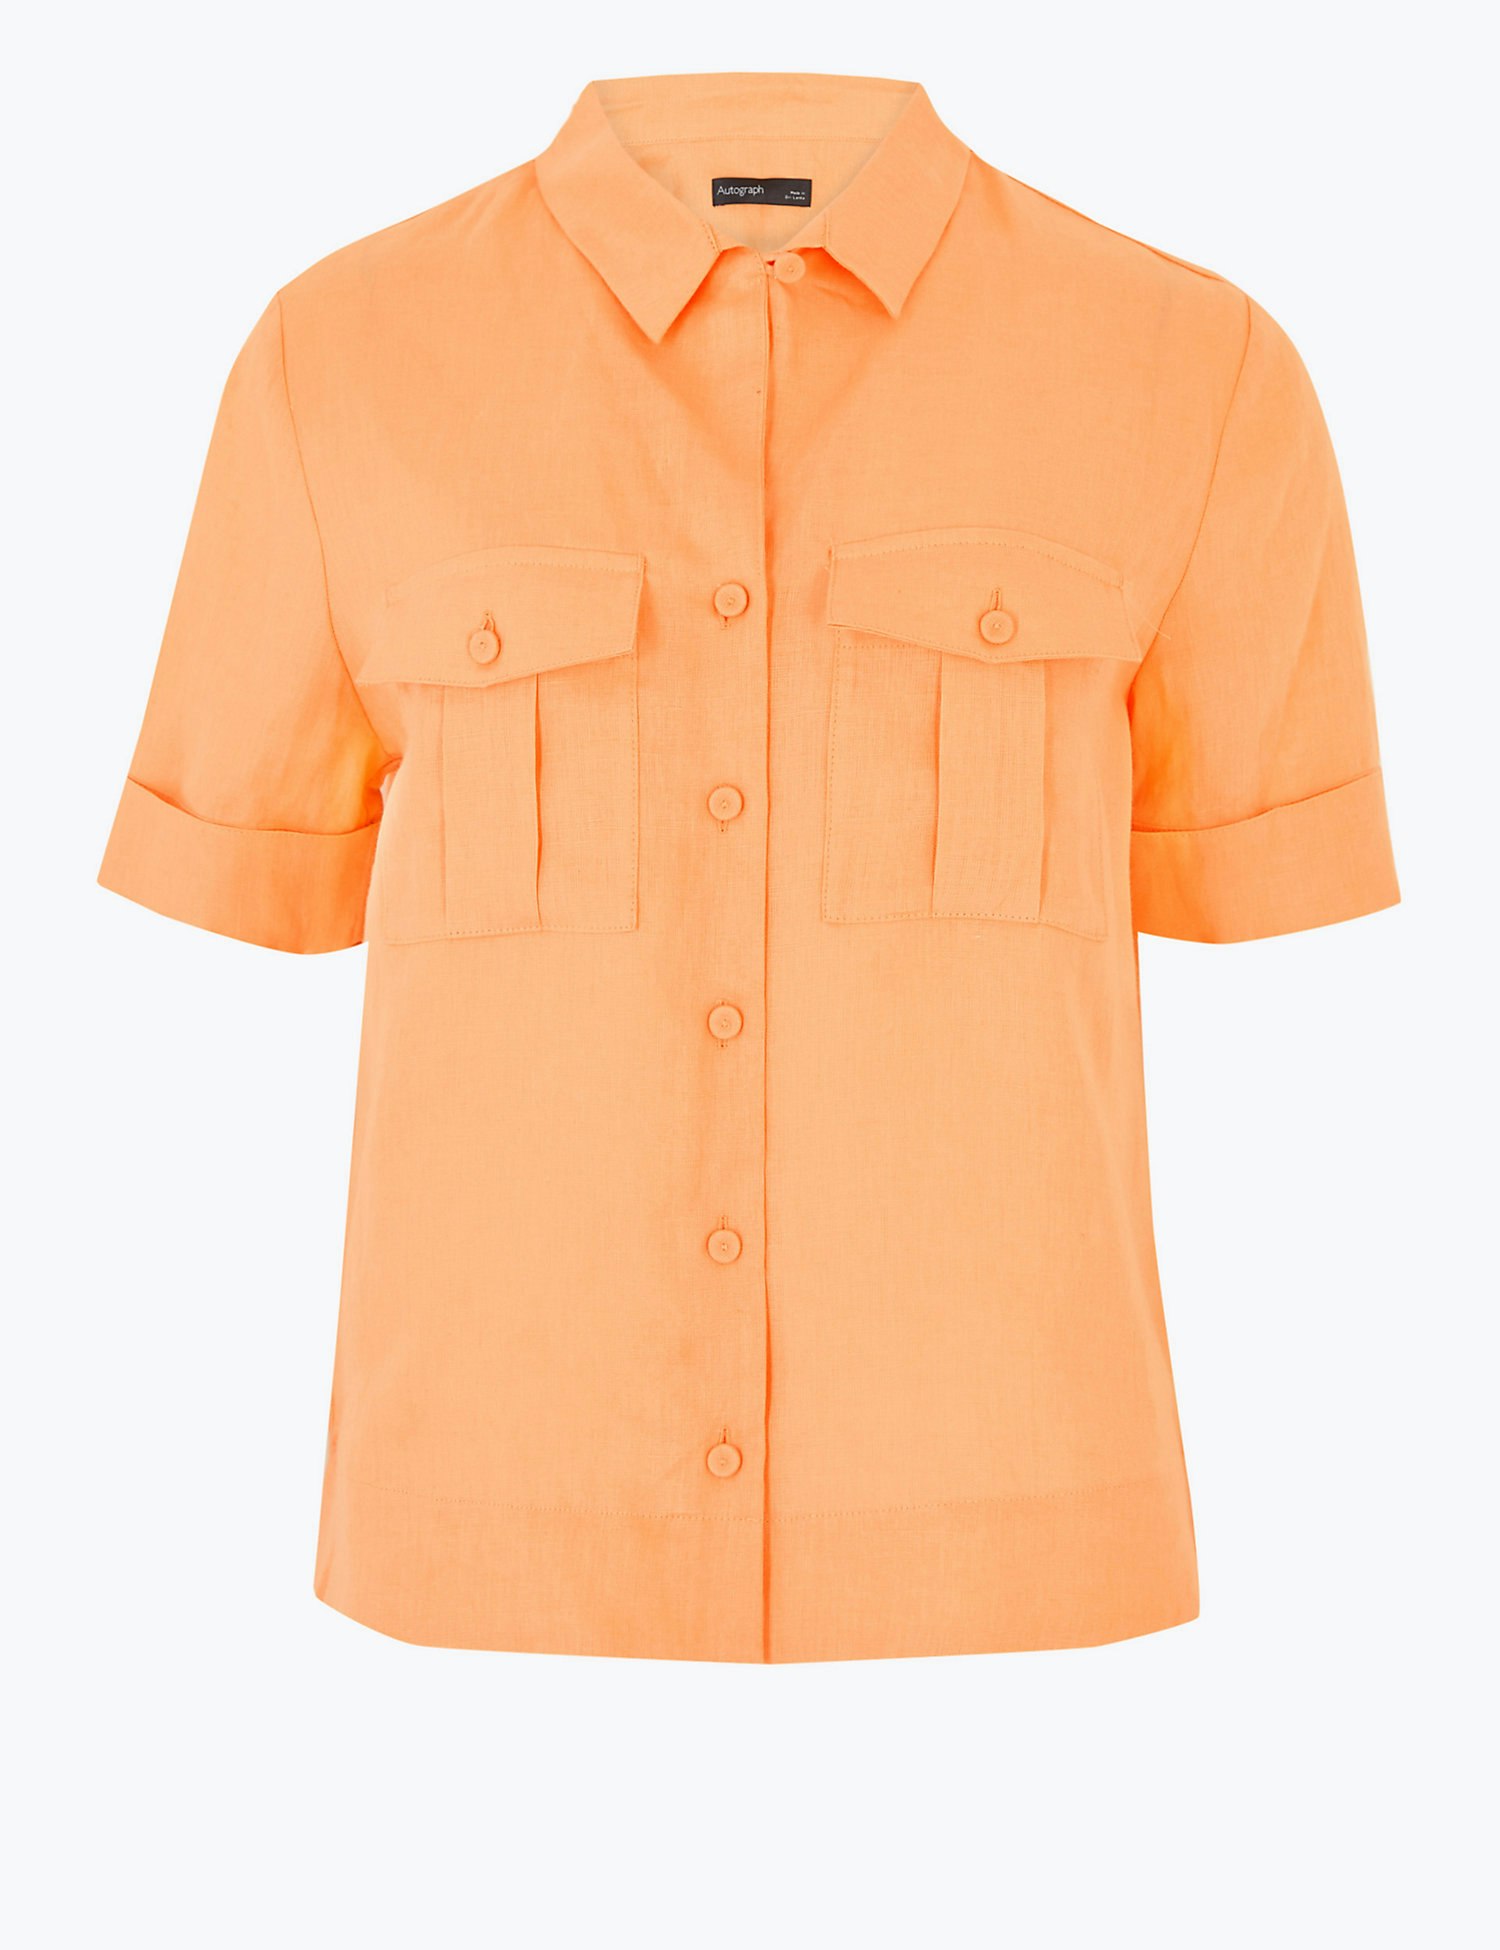 M&S ladies Pure linen shirt size 28 BNWT RRP £27.50 Orange Colour